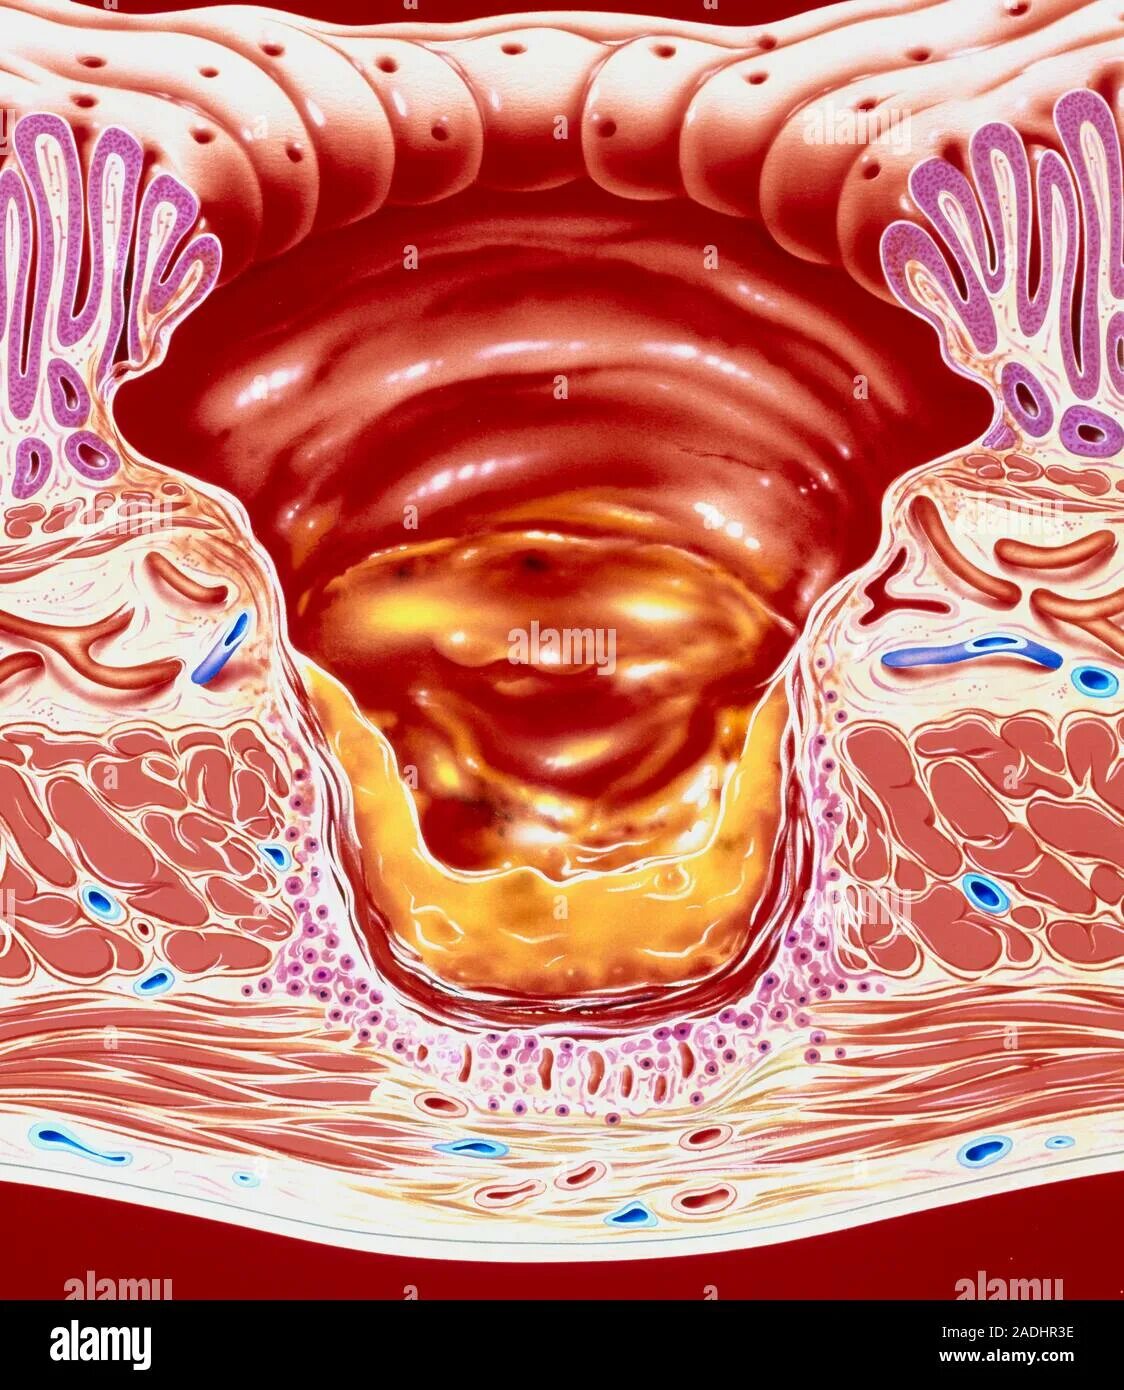 Язва 12 перстной кишки эндоскопия. Атлас эндоскопии язва желудка. Эрозия слизистой оболочки кишечника. Гигантская язва желудка. Слизистая оболочка 12 кишки